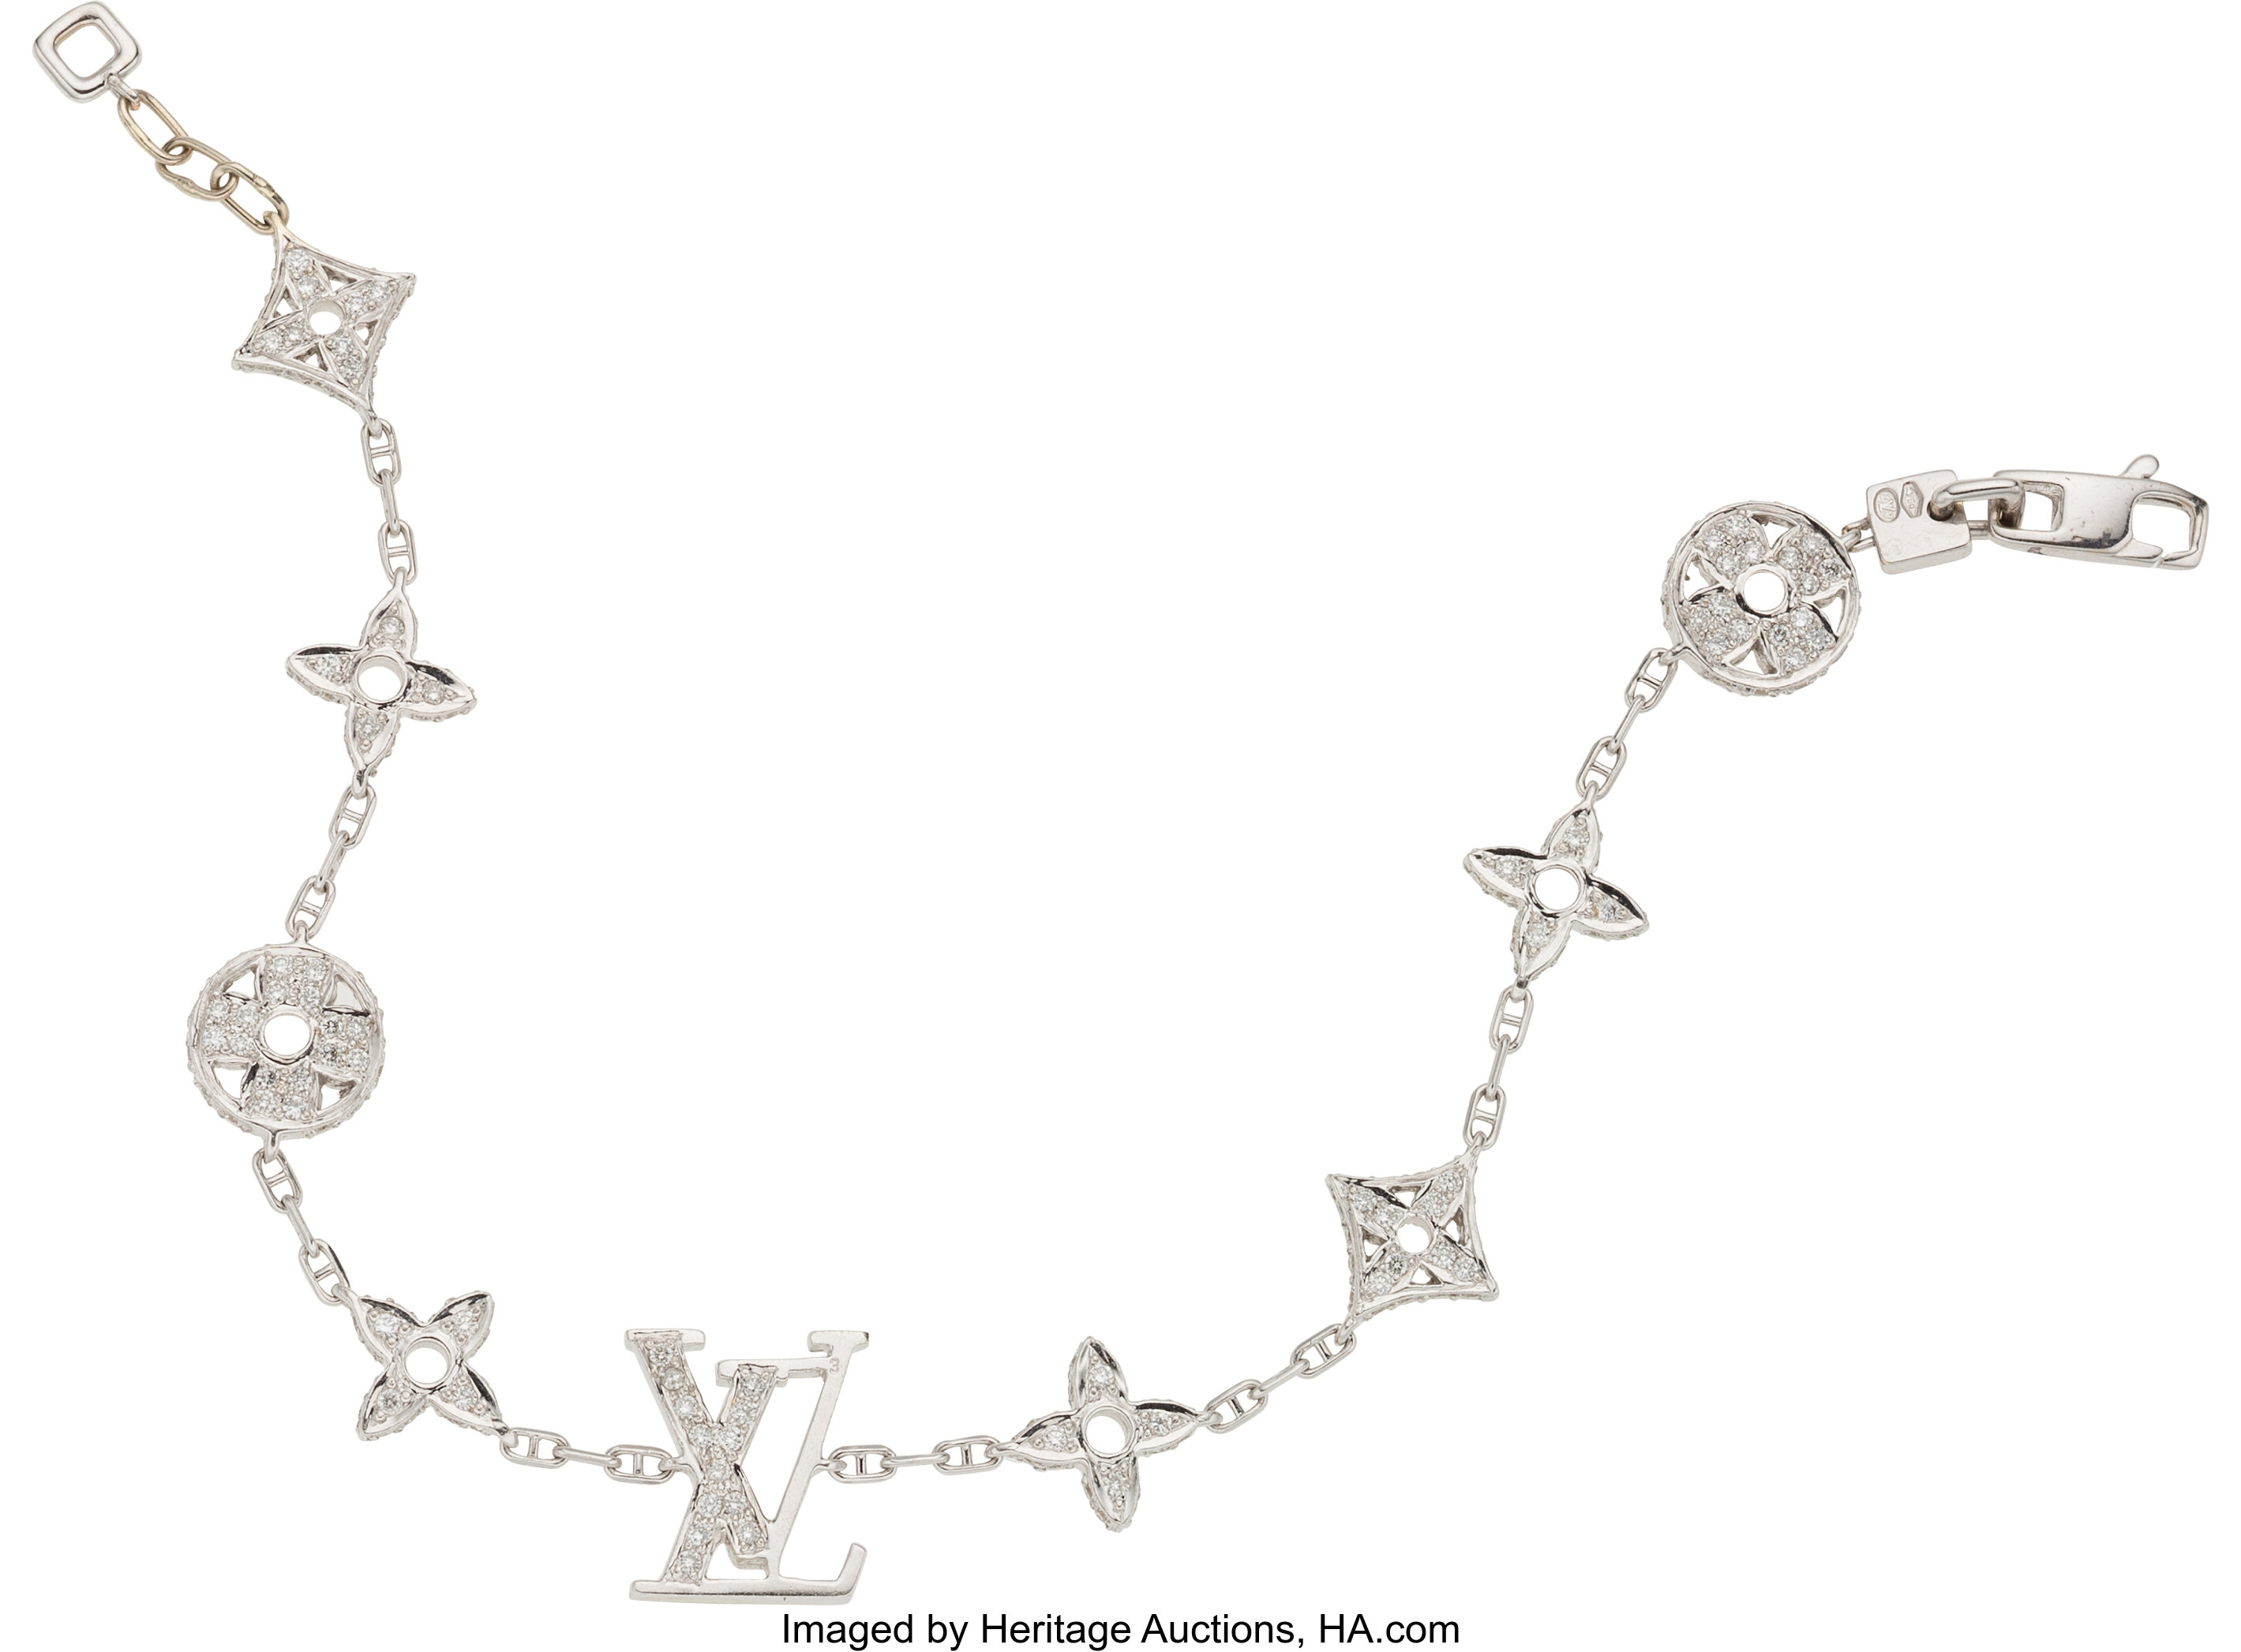 Louis Vuitton 18K White Gold & Diamond Monogram Bracelet.